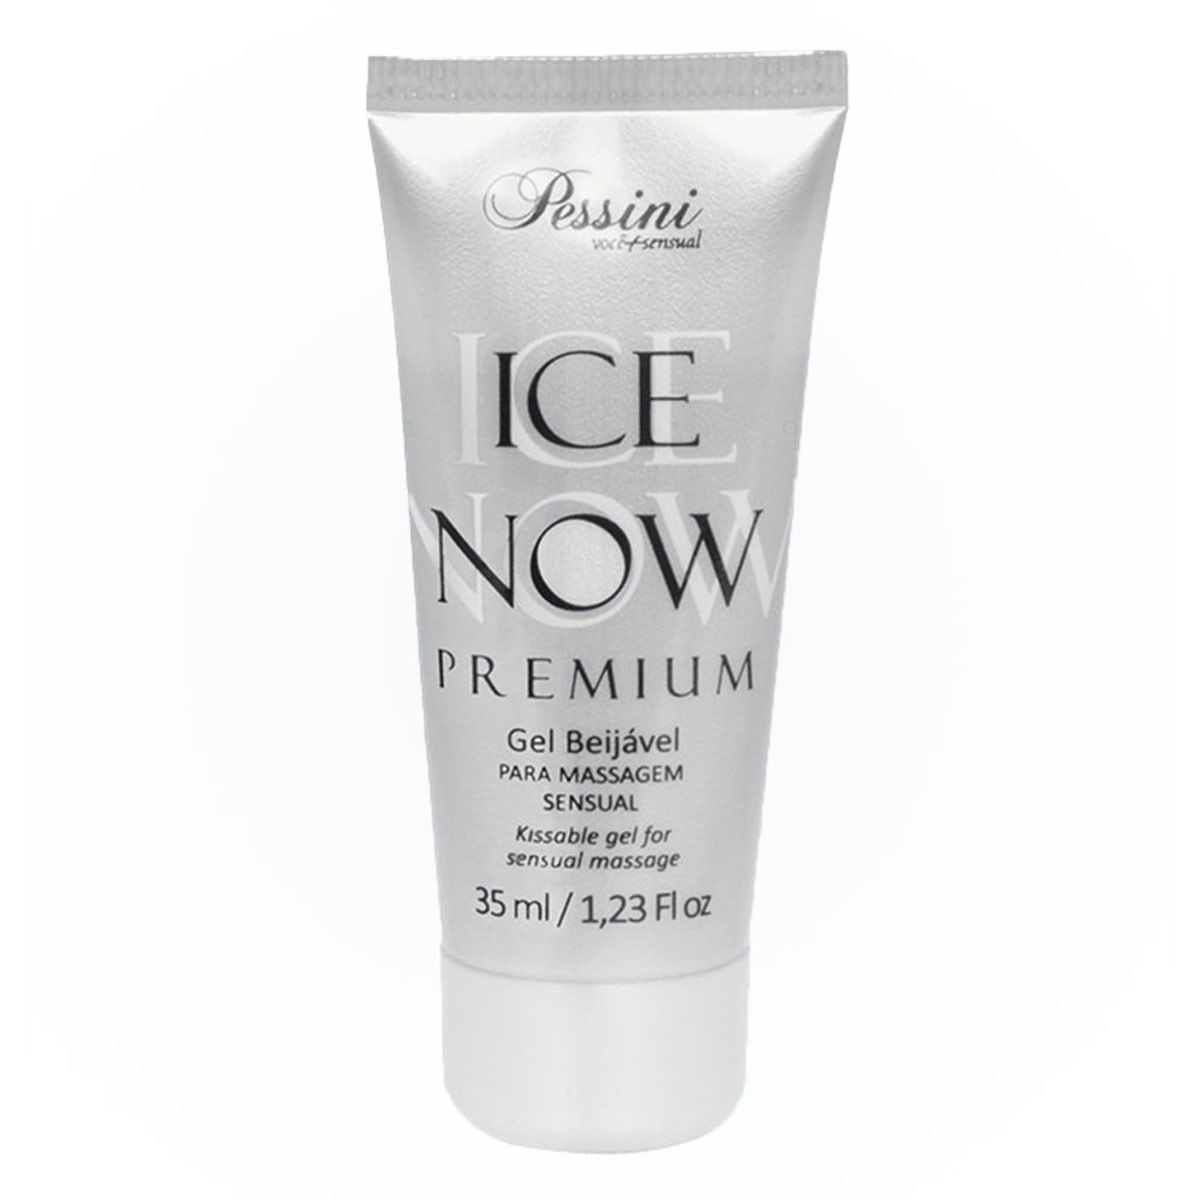 Ice Now Premium Uva 35ml Pessini